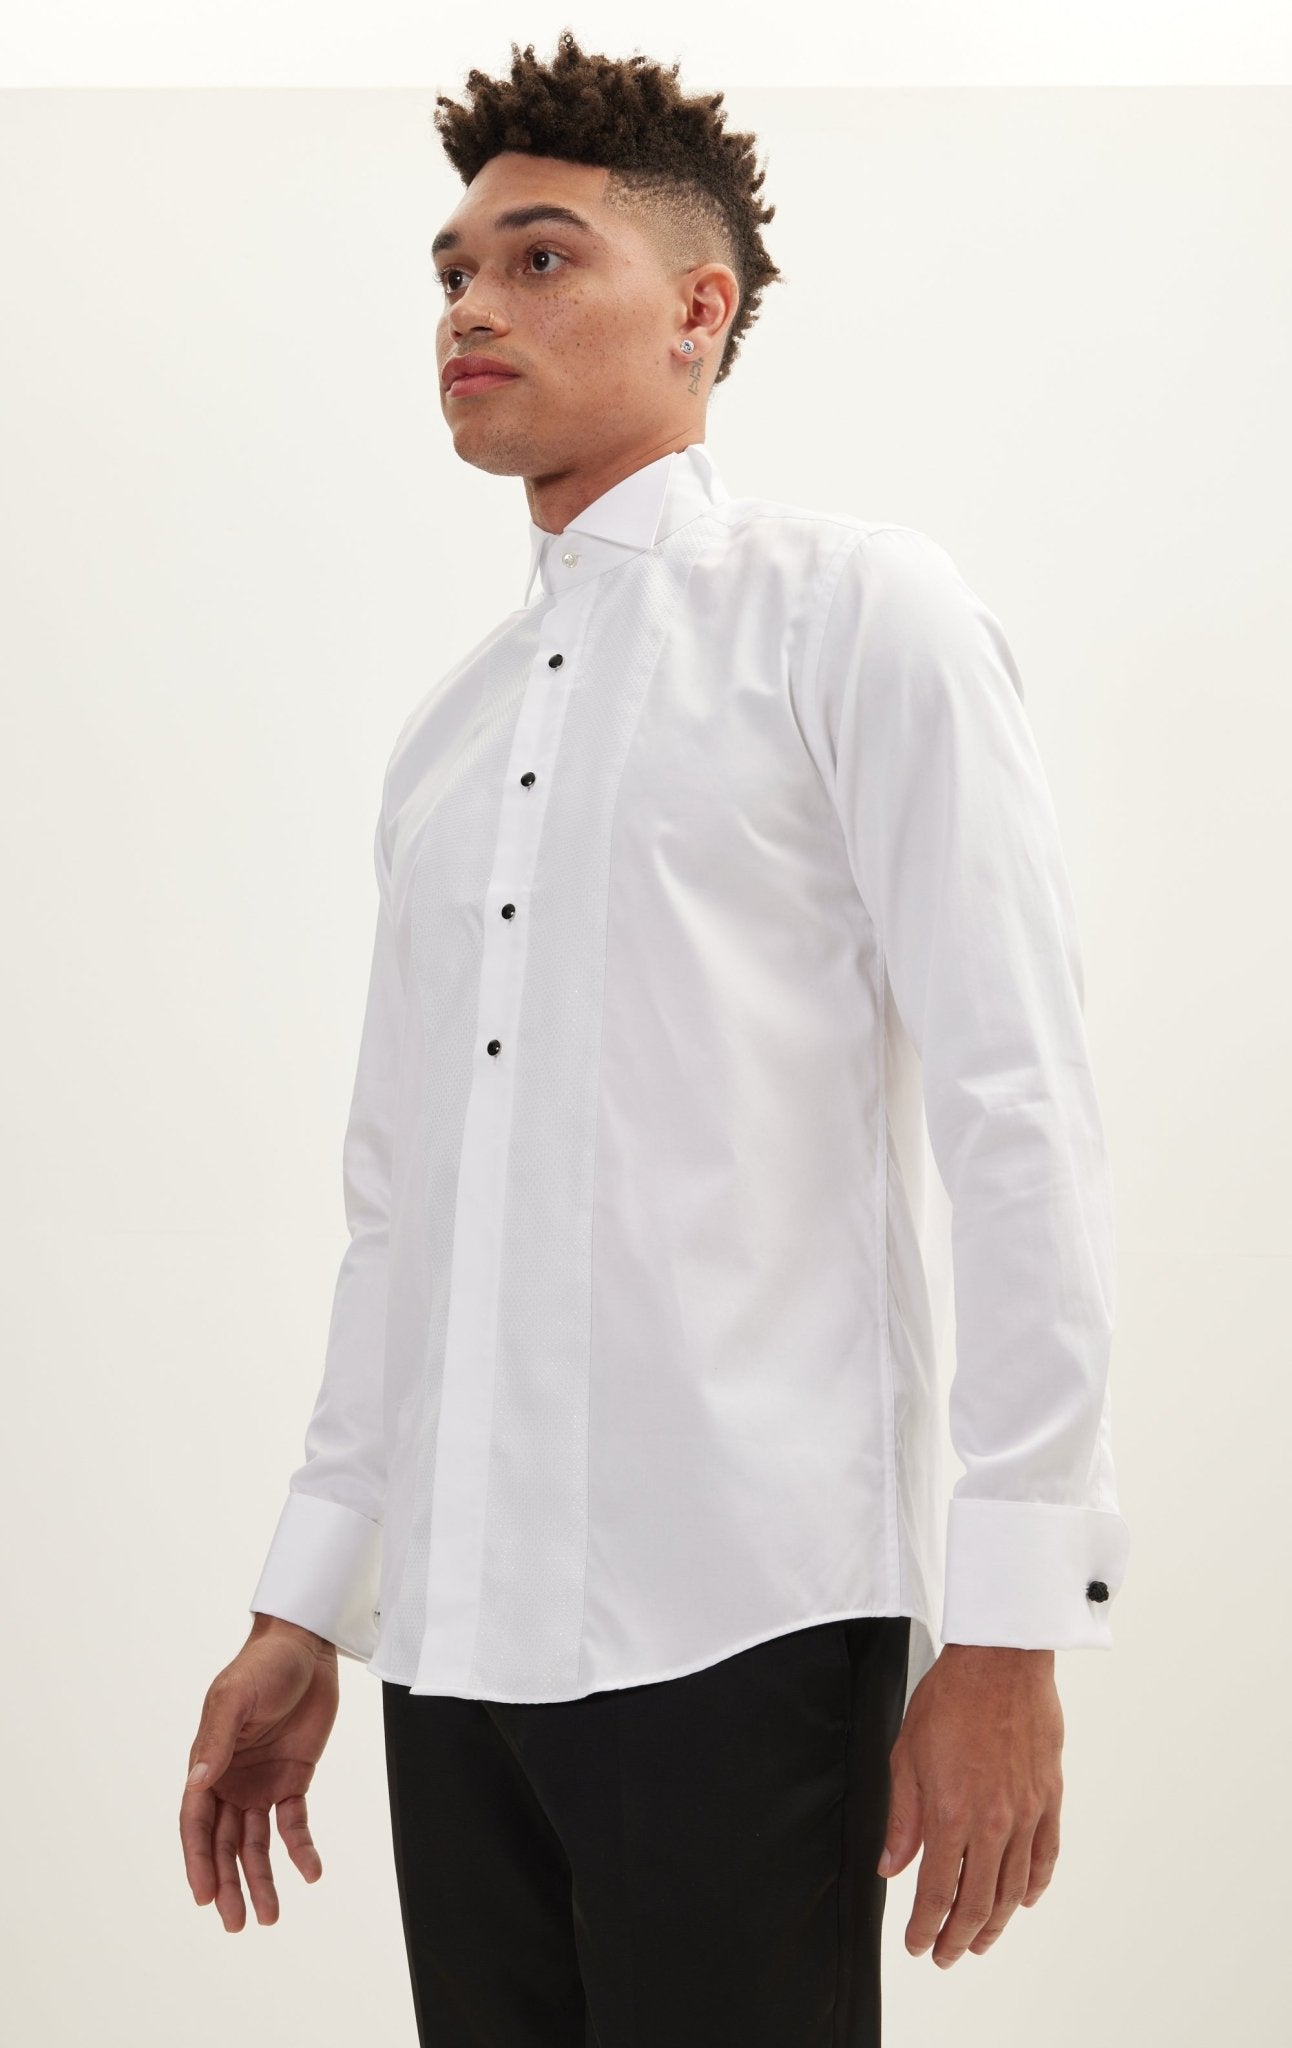 Pique Bib Tuxedo Shirt - White White - Ron Tomson